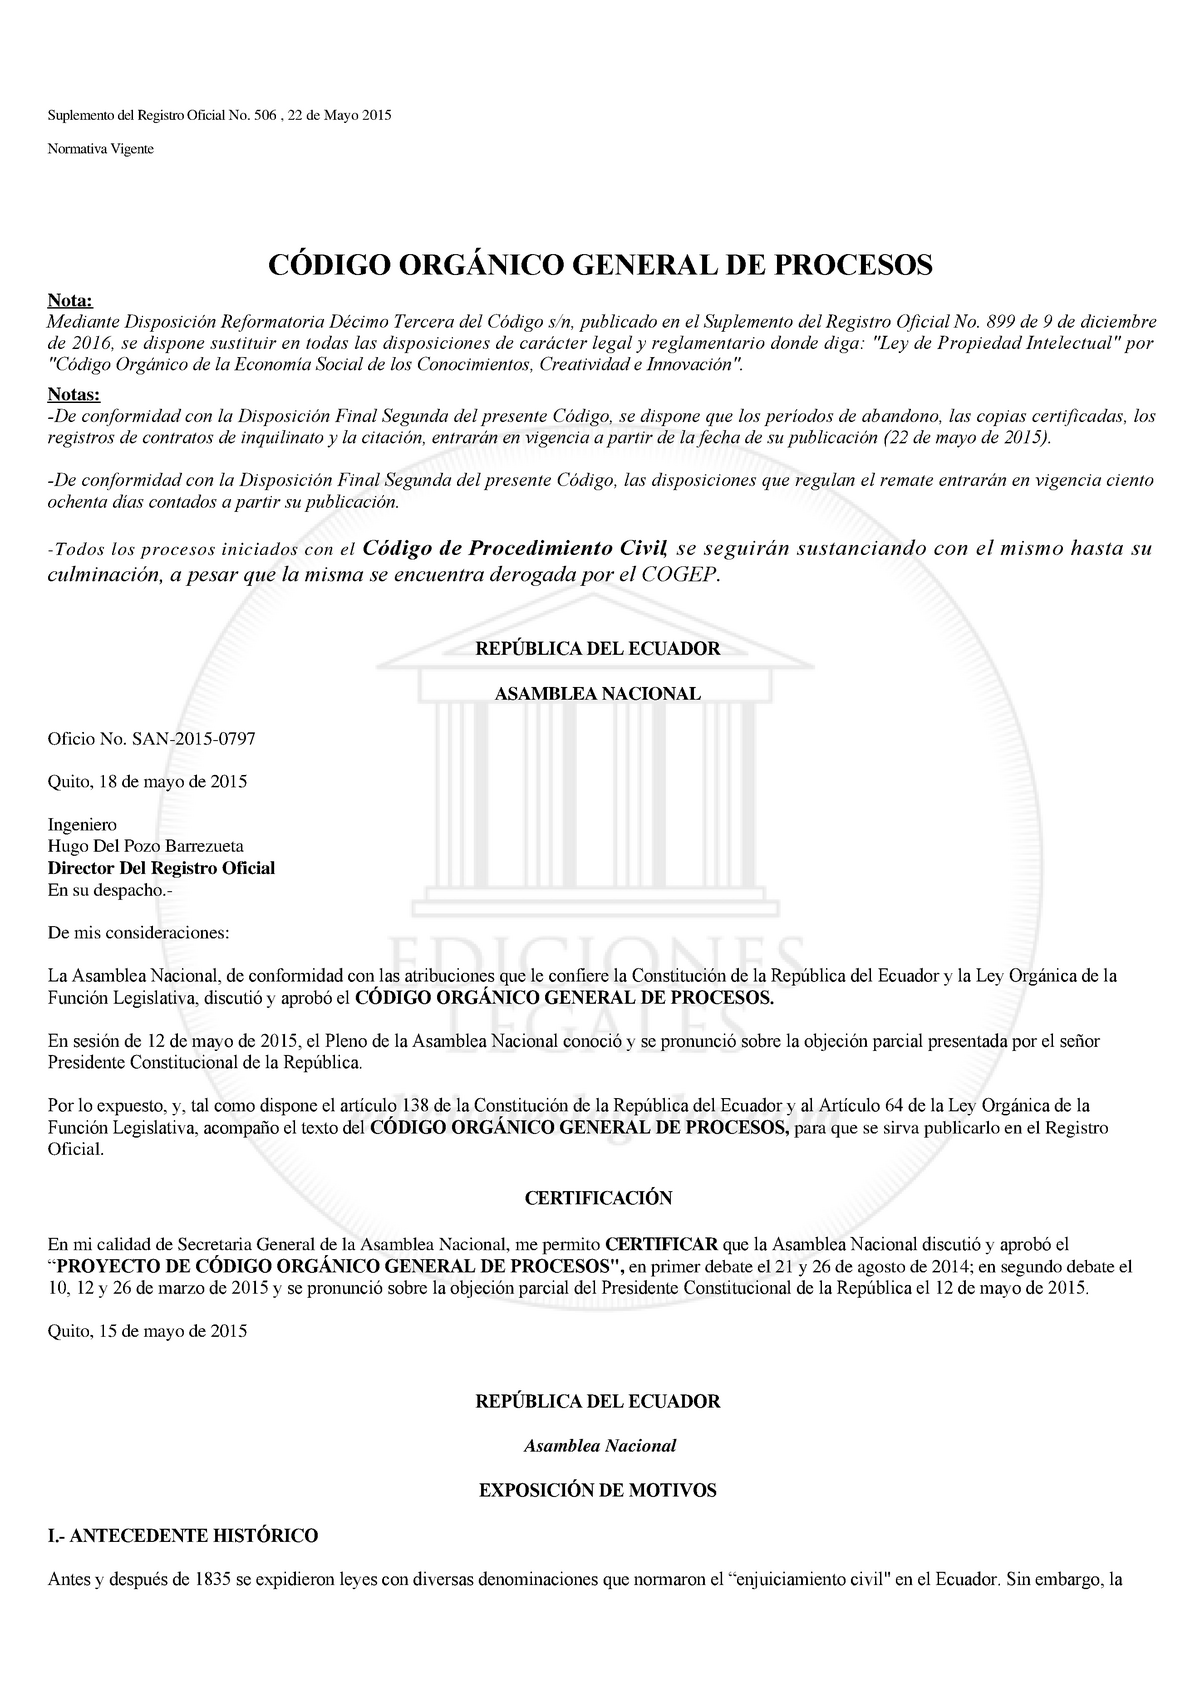 Codigo Organico General De Procesos Cogep Utpl Studocu